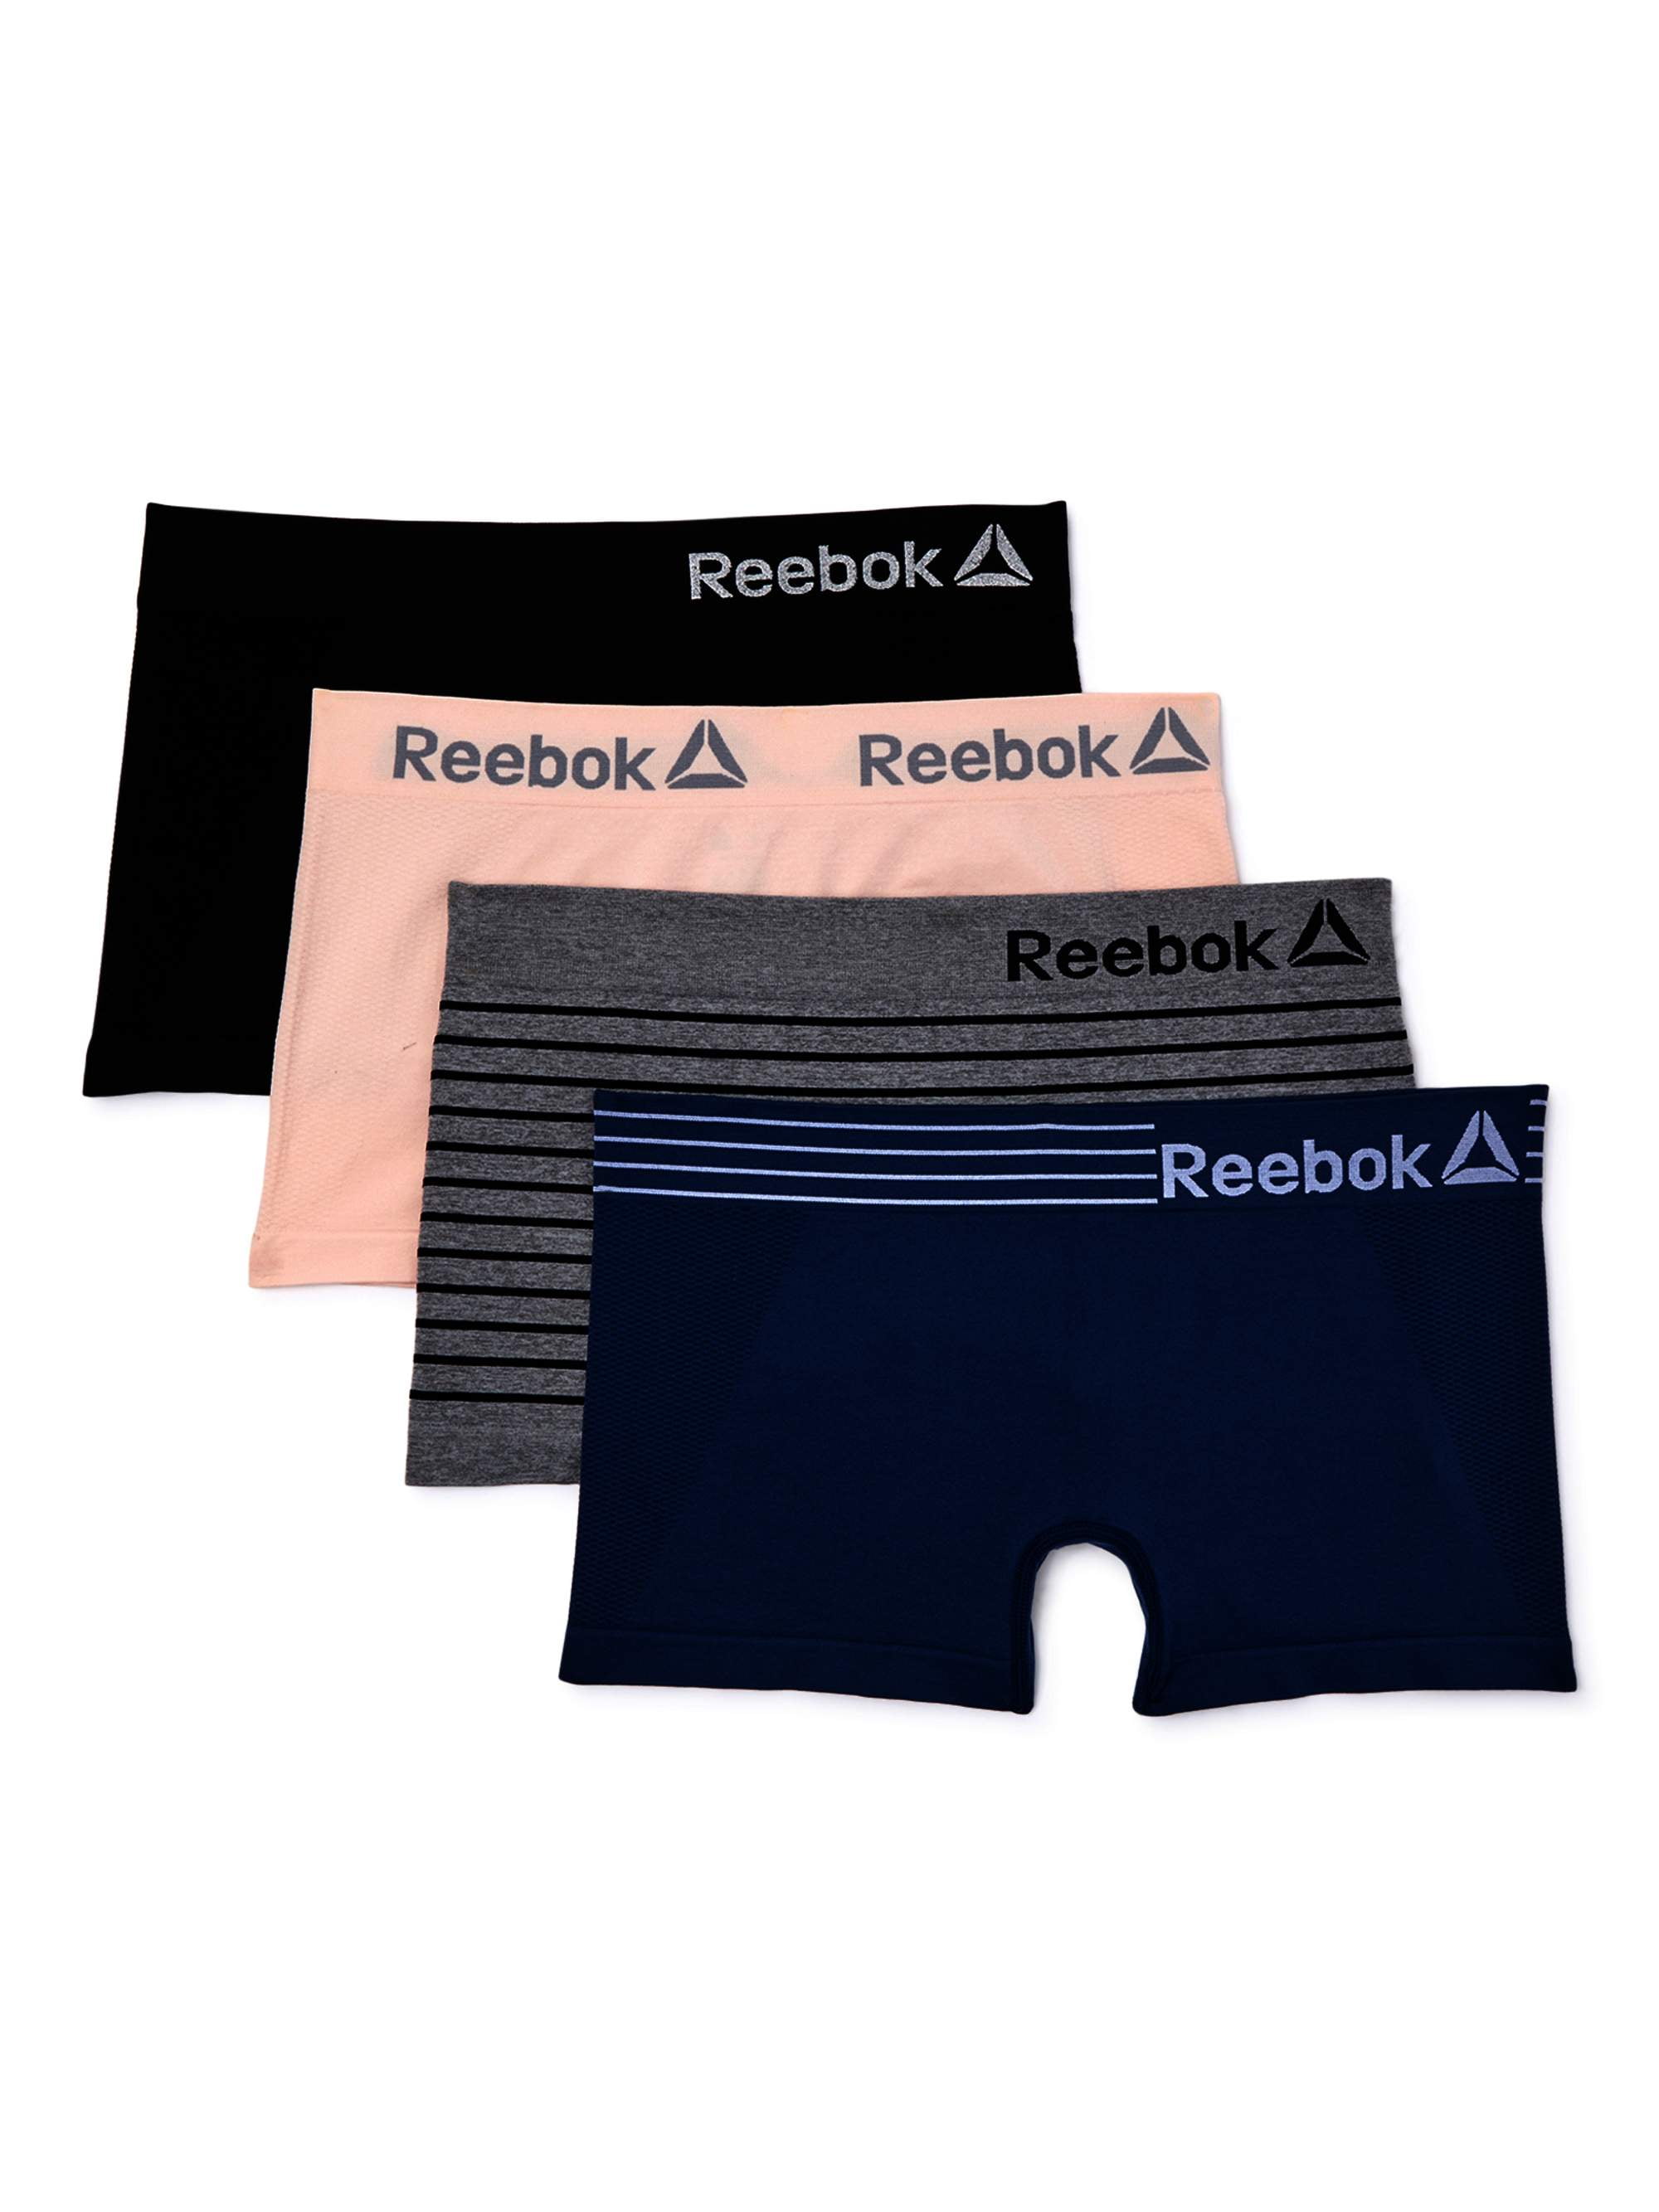 Reebok Womens Underwear 2 Pack Seamless Microfiber Boyshort Panties